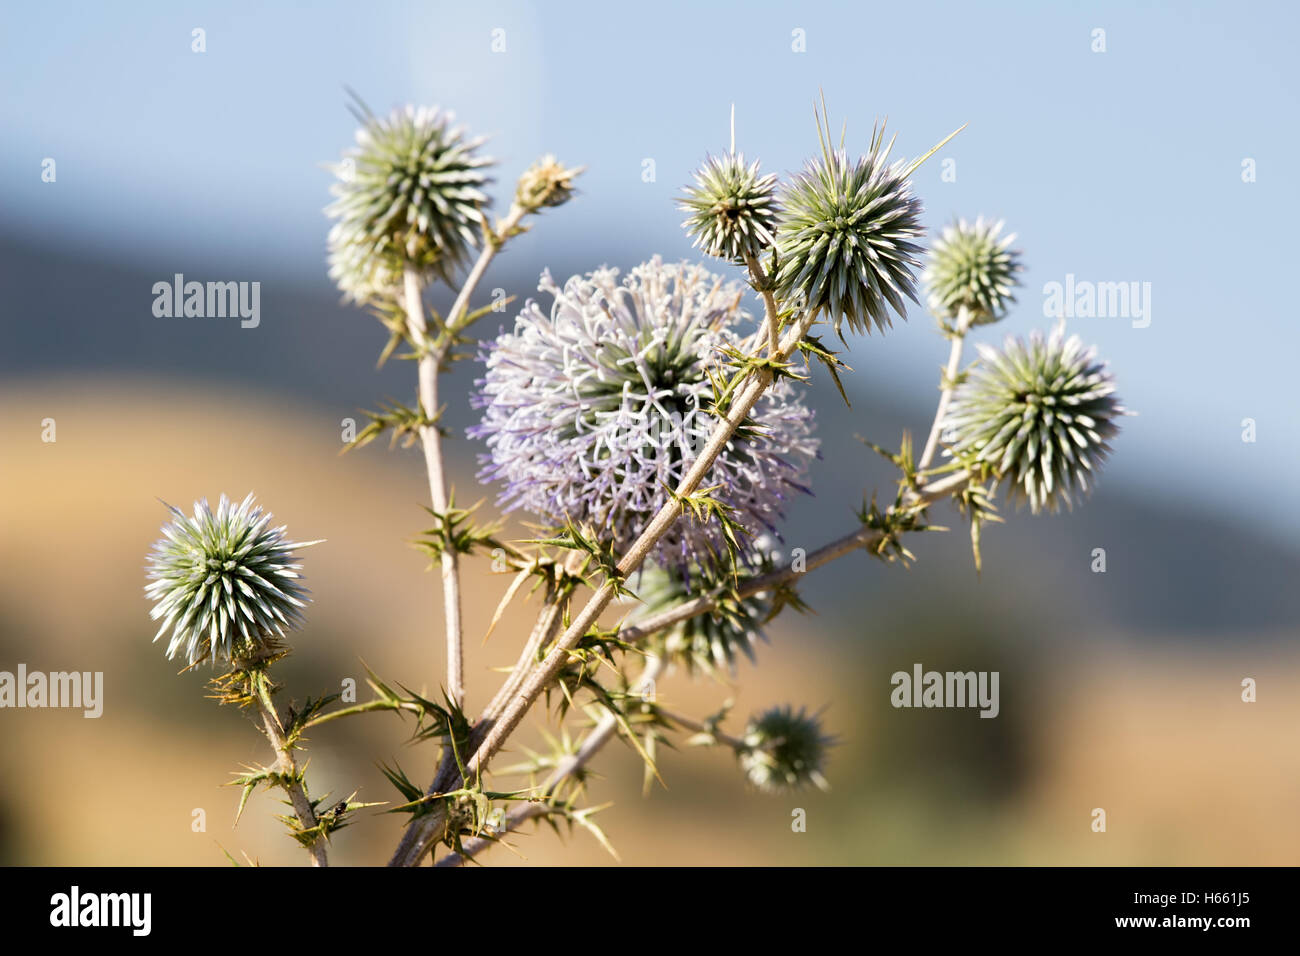 Chypre avec des fleurs sauvages de plantes piquantes, faible profondeur de champ Banque D'Images